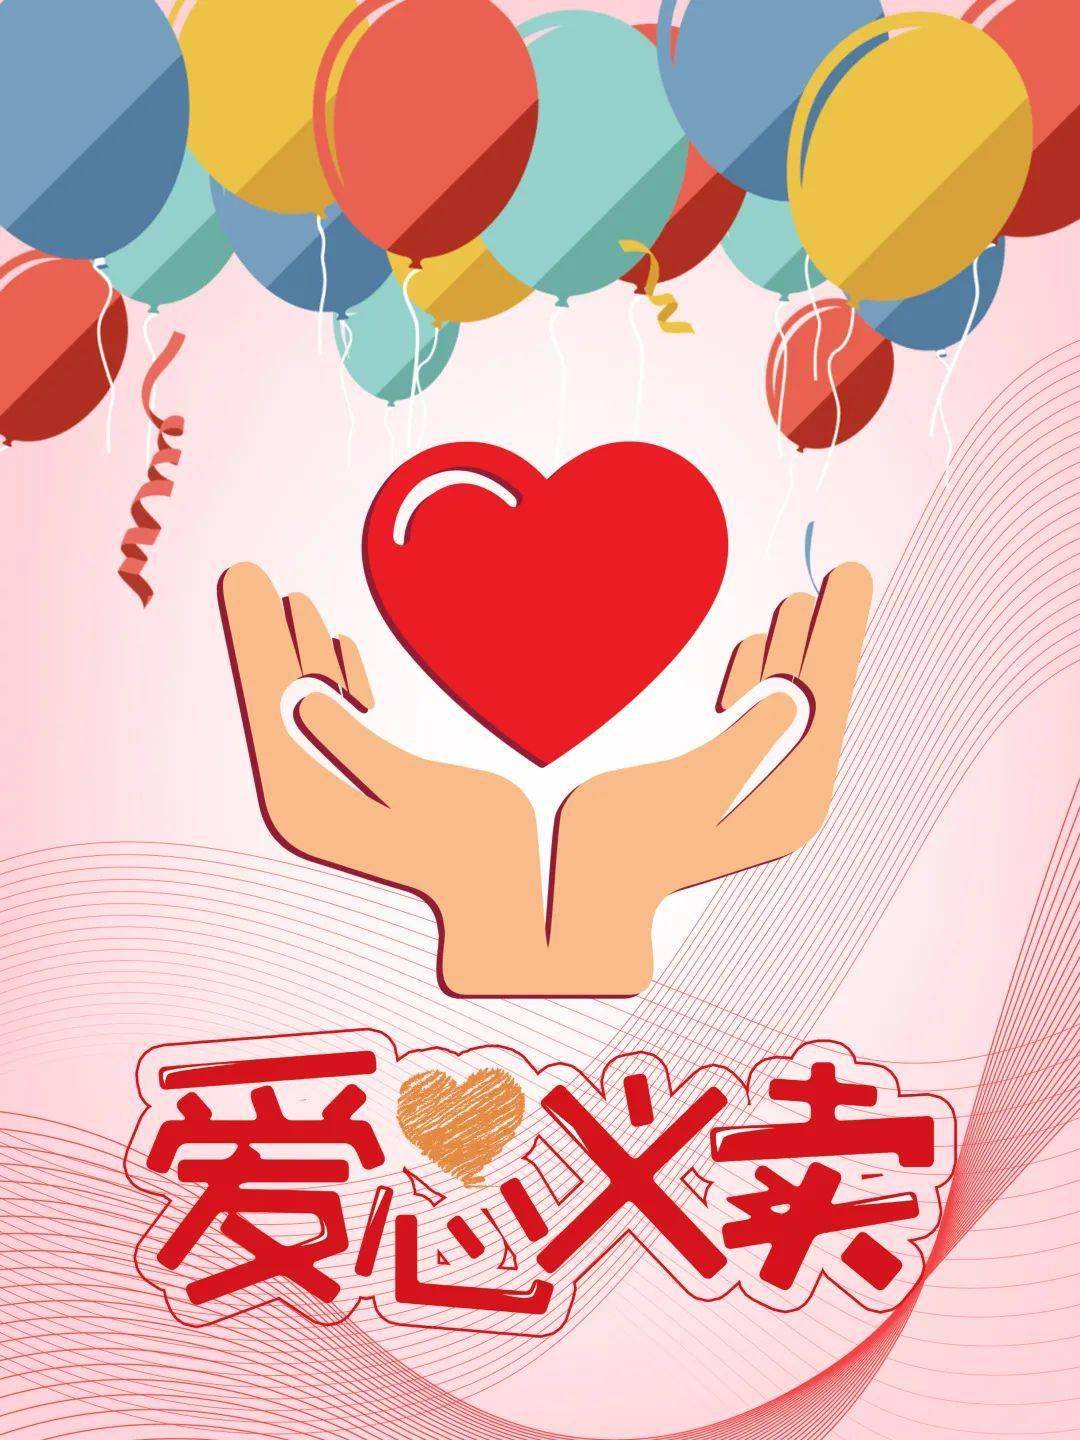 校园新闻北京东路小学红山分校举行红领巾爱心义卖活动